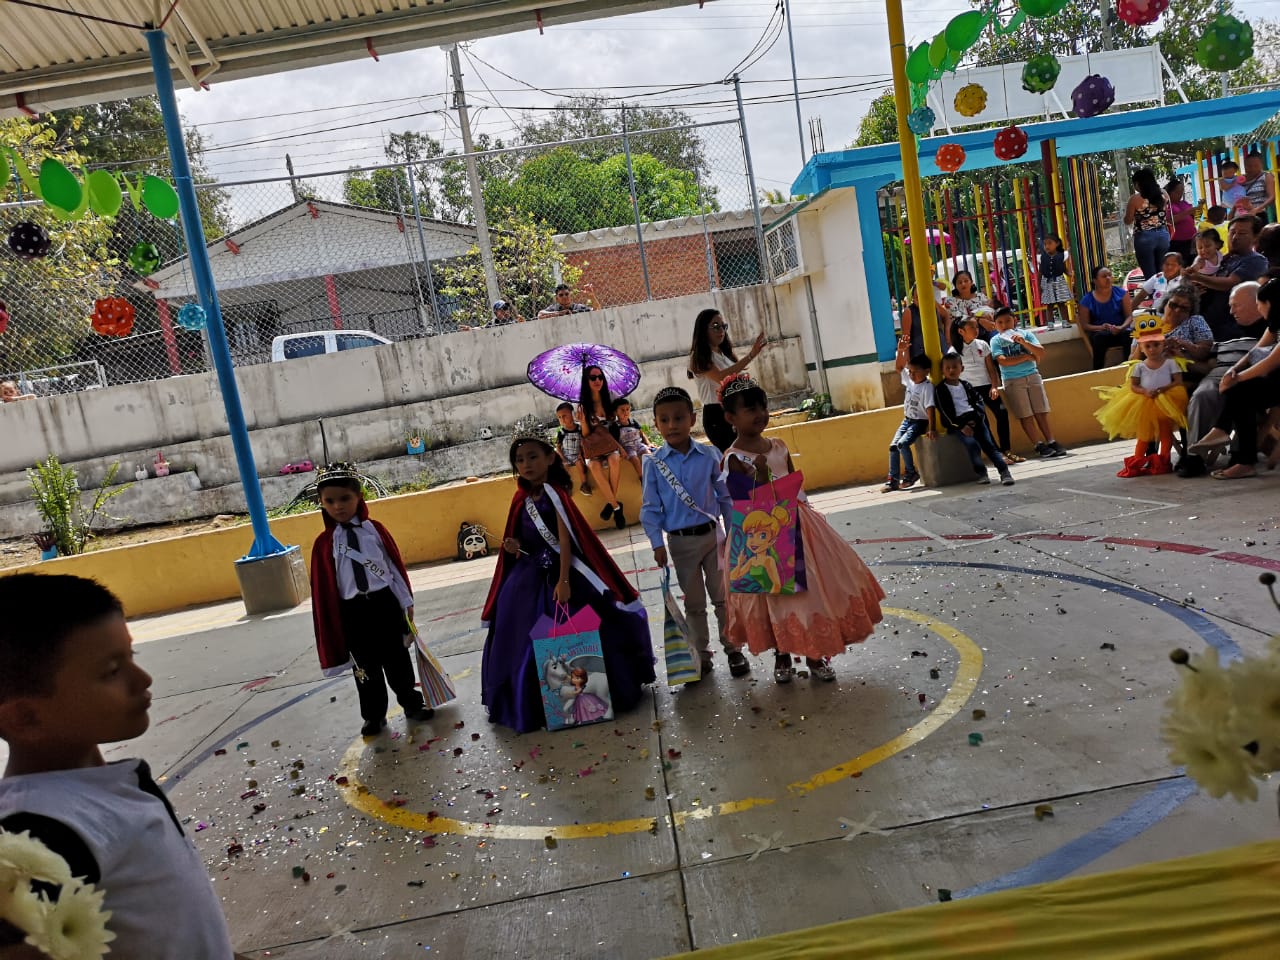 Coronación en el Jardín de niños Valentín Gómez Farias